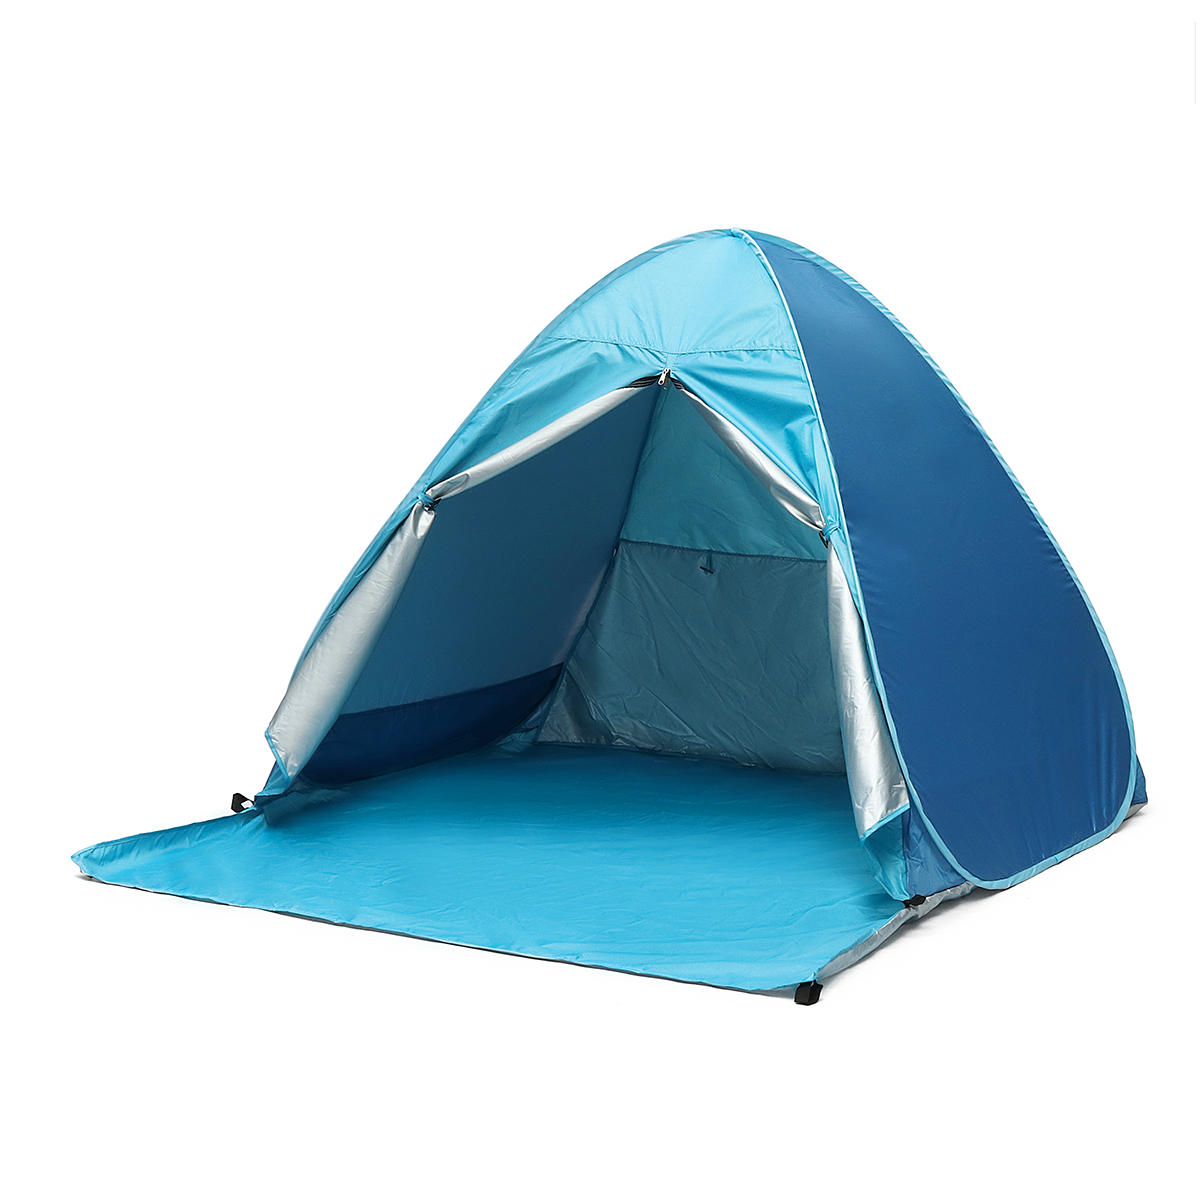 IPRee Outdoor Namiot plażowy i campingowy dla 4 osób, automatyczny, wodoodporny, anty-UV, z daszkiem przeciwsłonecznym